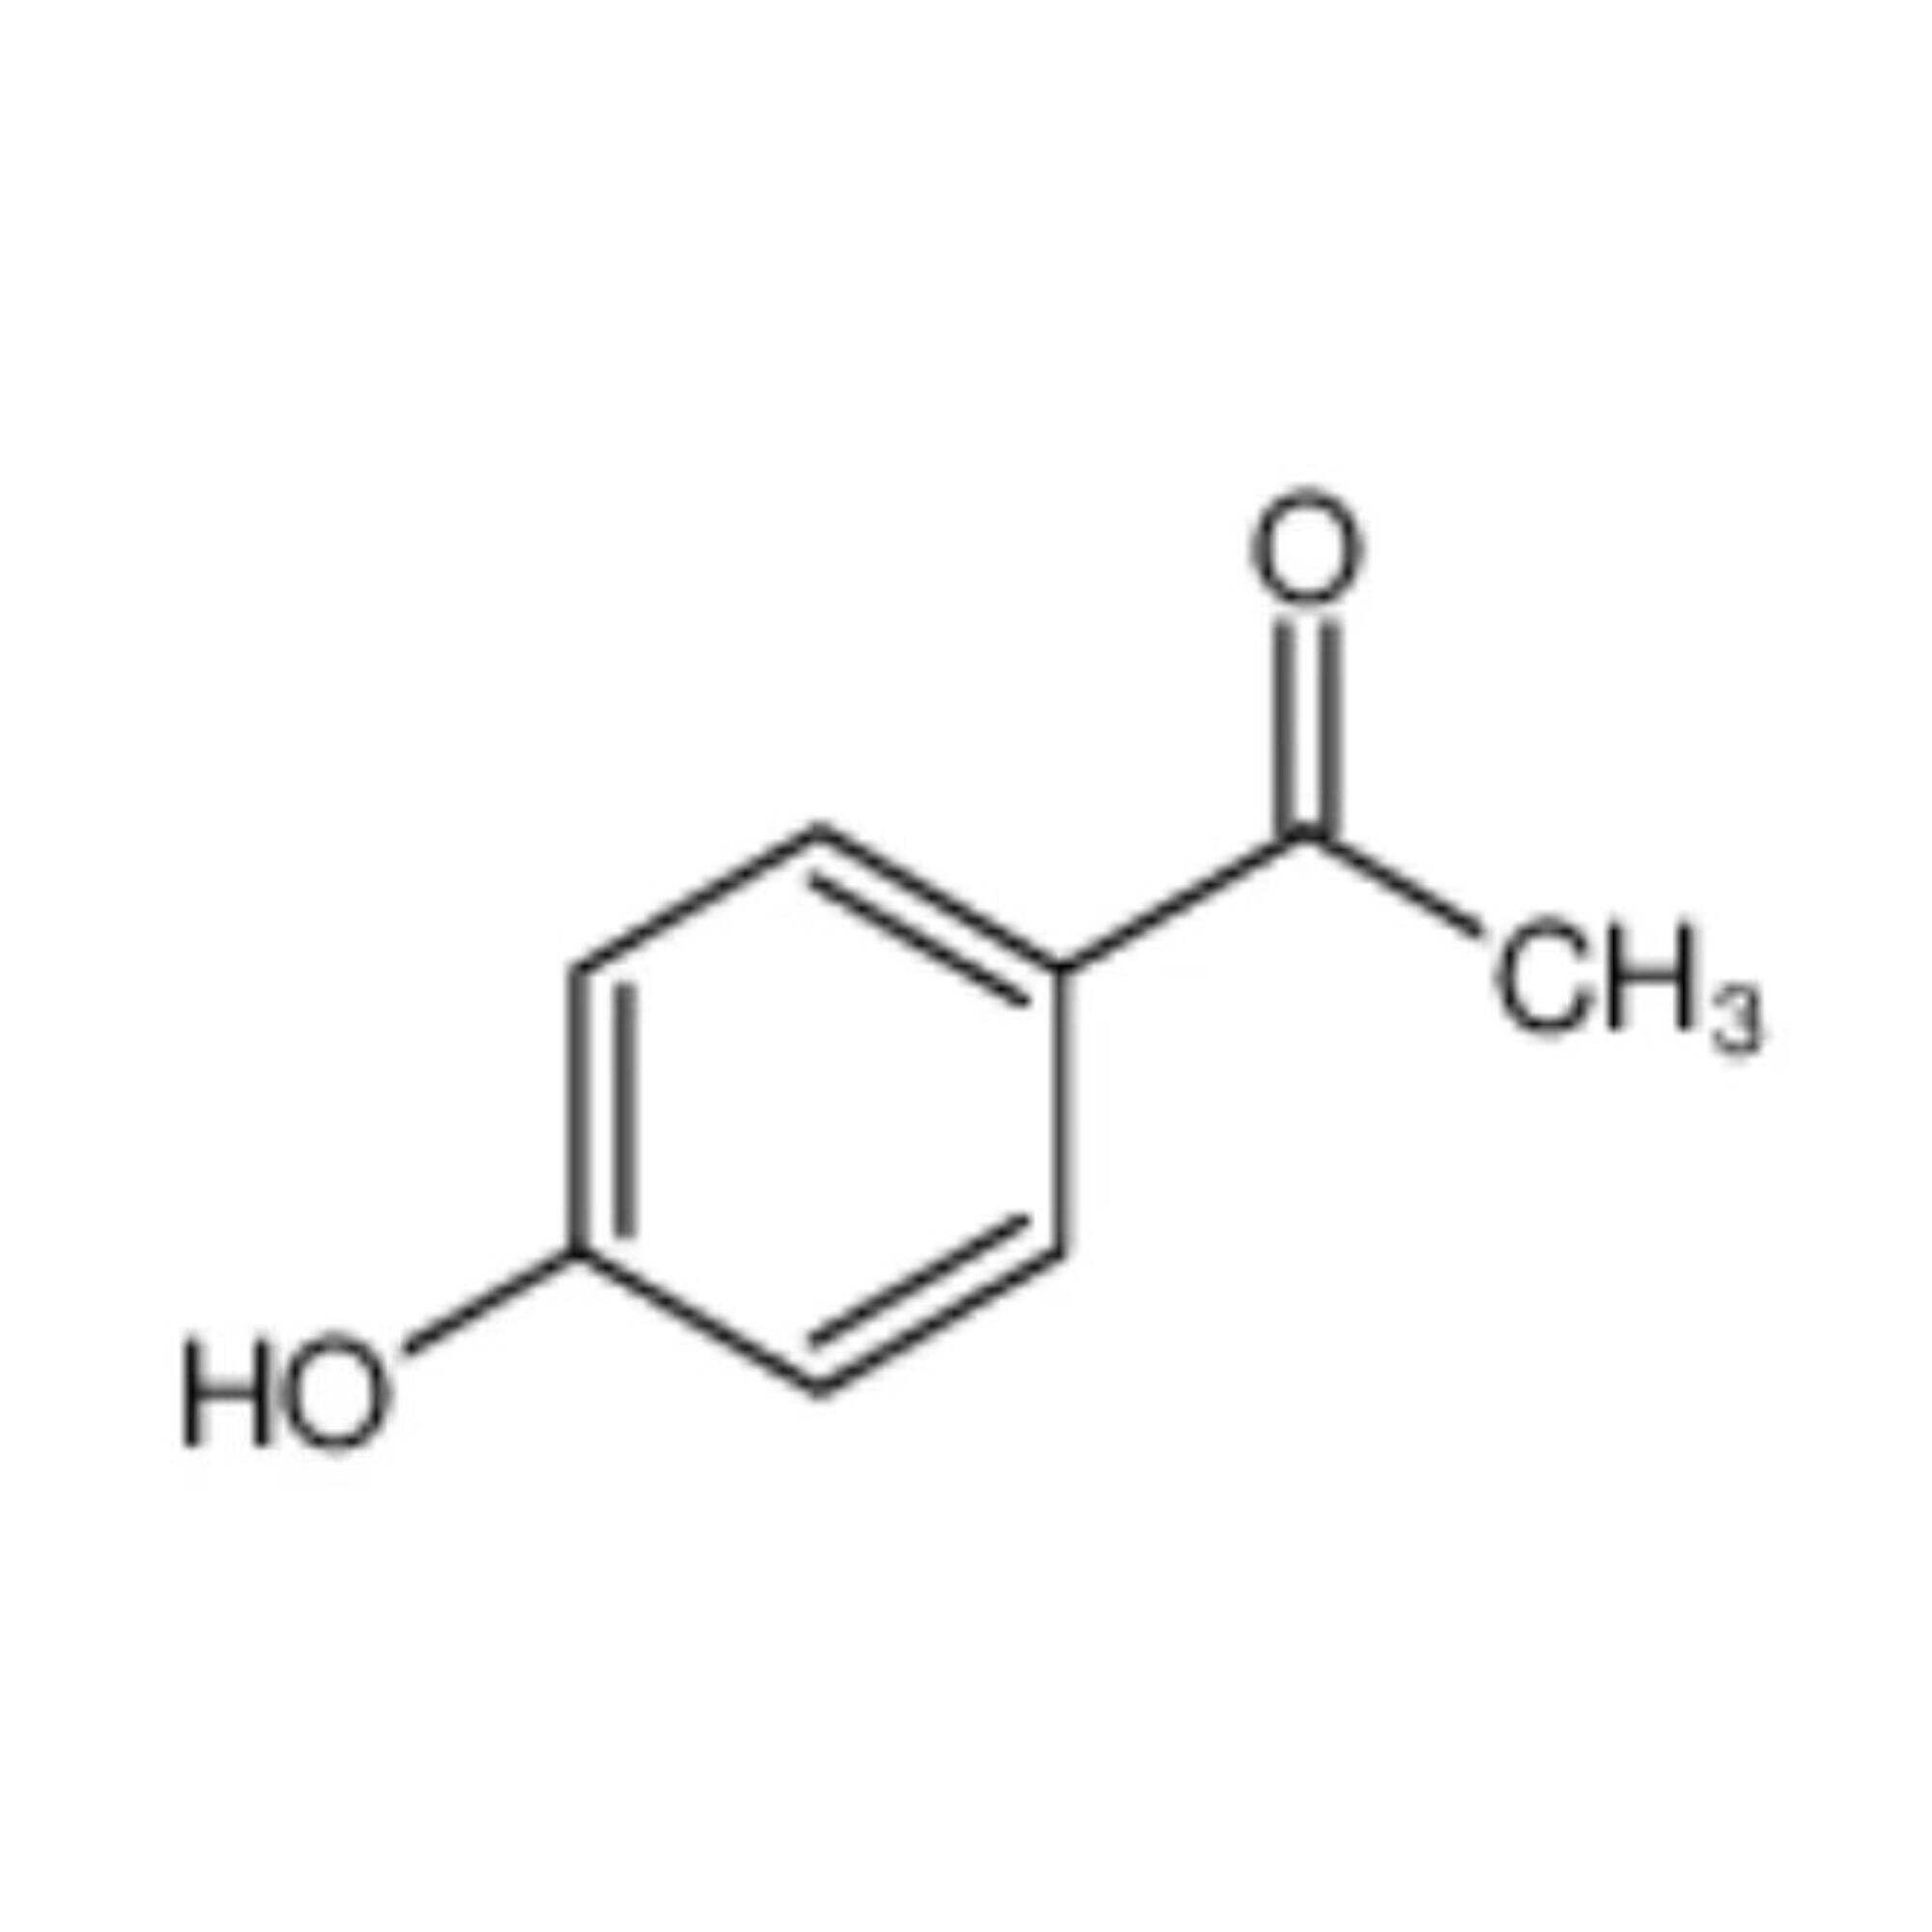 4'-Hydroxyacetofenon